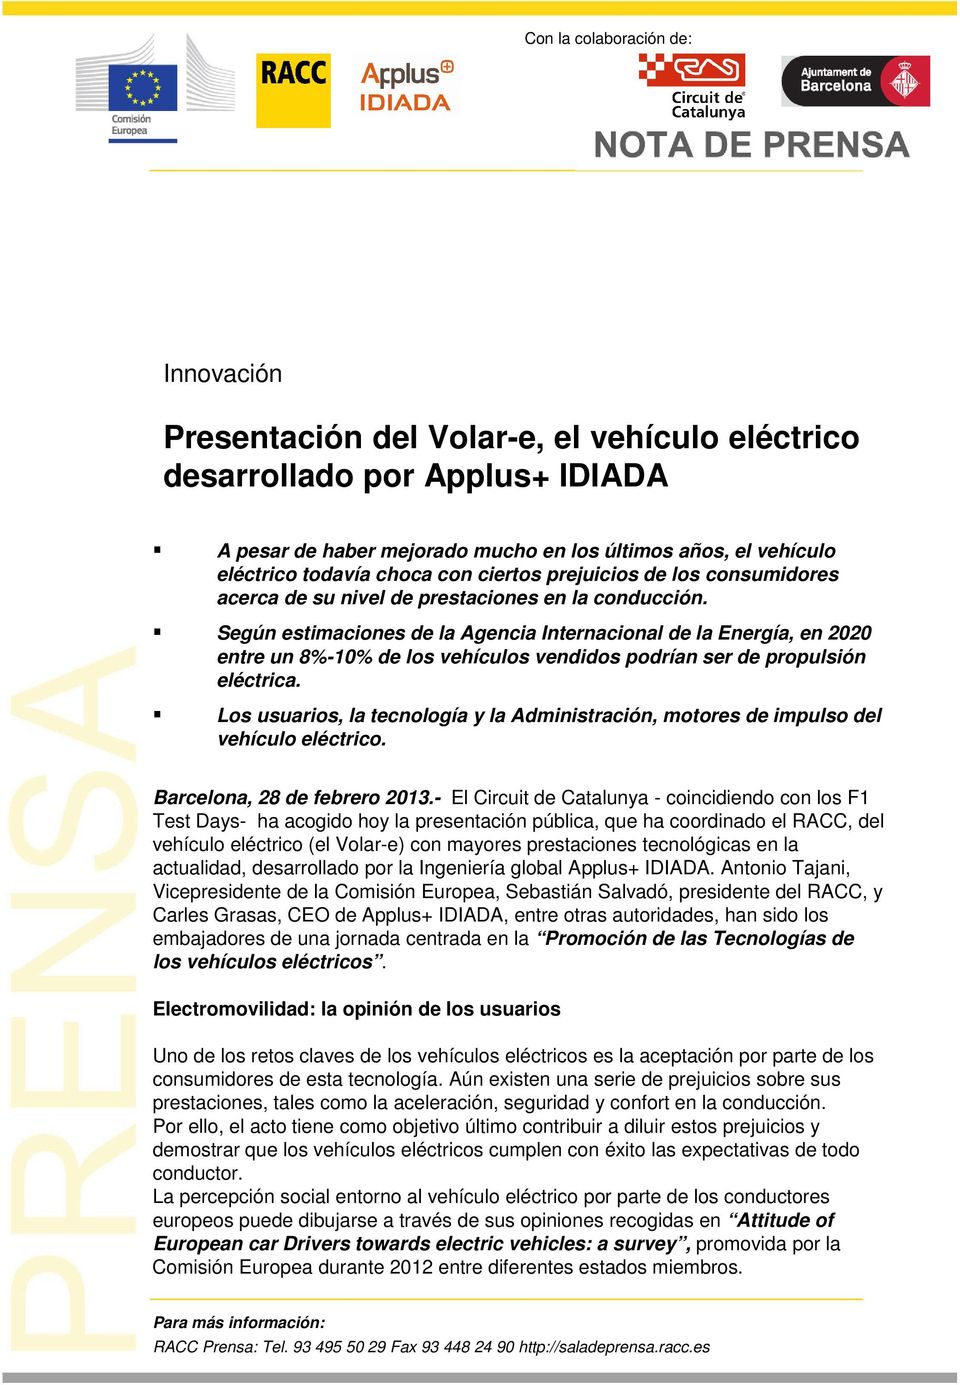 Según estimaciones de la Agencia Internacional de la Energía, en 2020 entre un 8%-10% de los vehículos vendidos podrían ser de propulsión eléctrica.